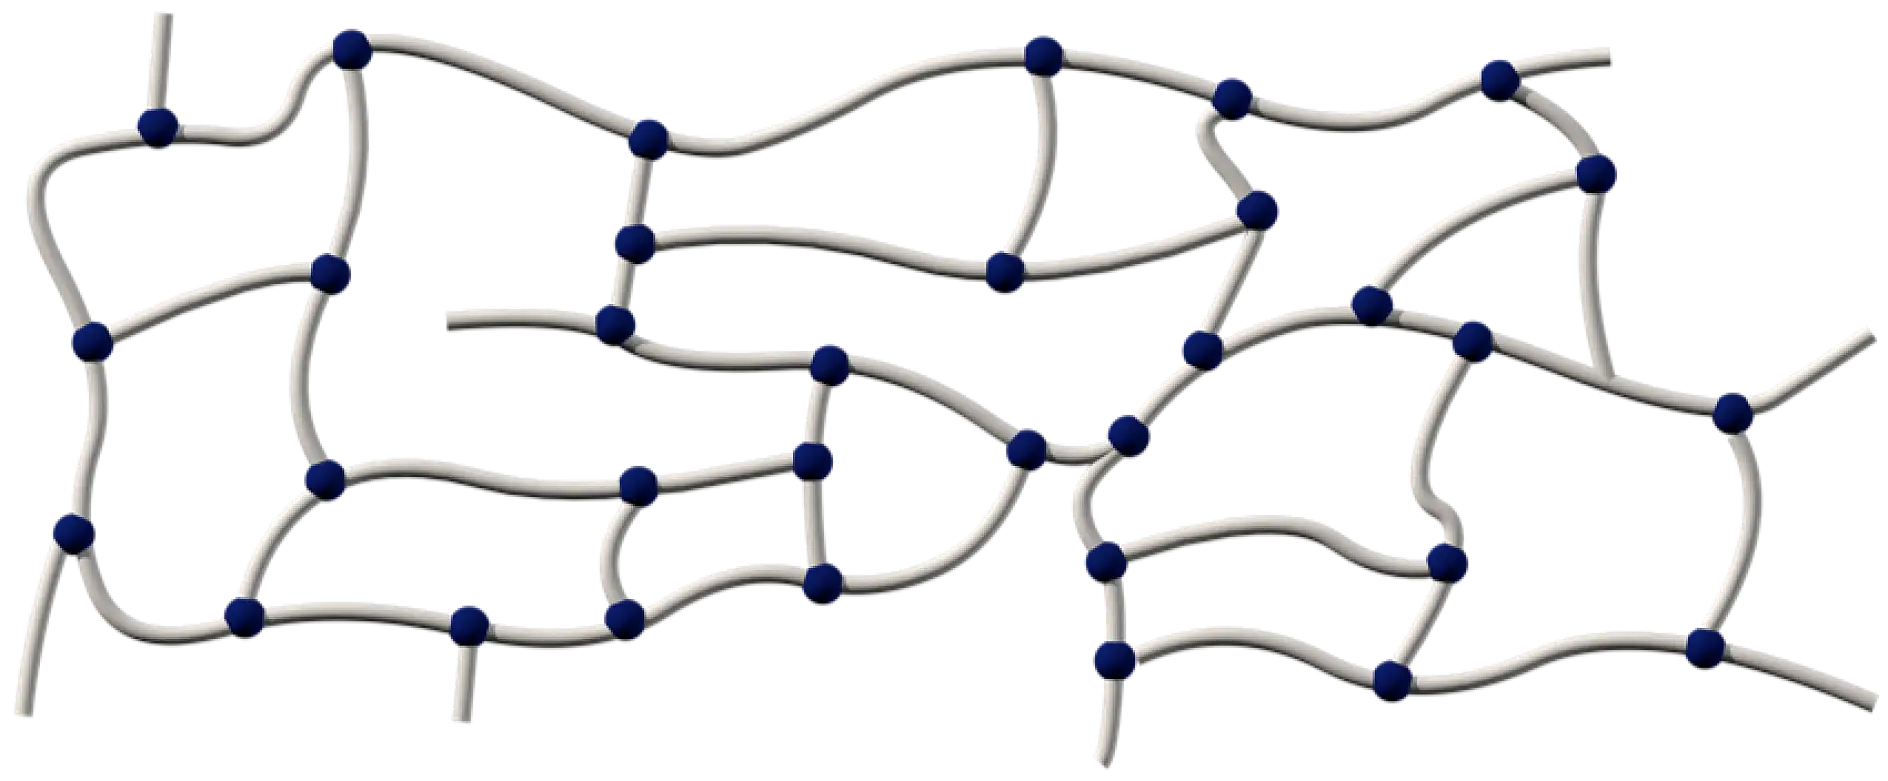 Acryllijmen bestaan uit lange polymeerketens, die met verschillende methoden kruislings kunnen worden verbonden: chemisch, door uv-straling, of door harden met een elektronenbundel